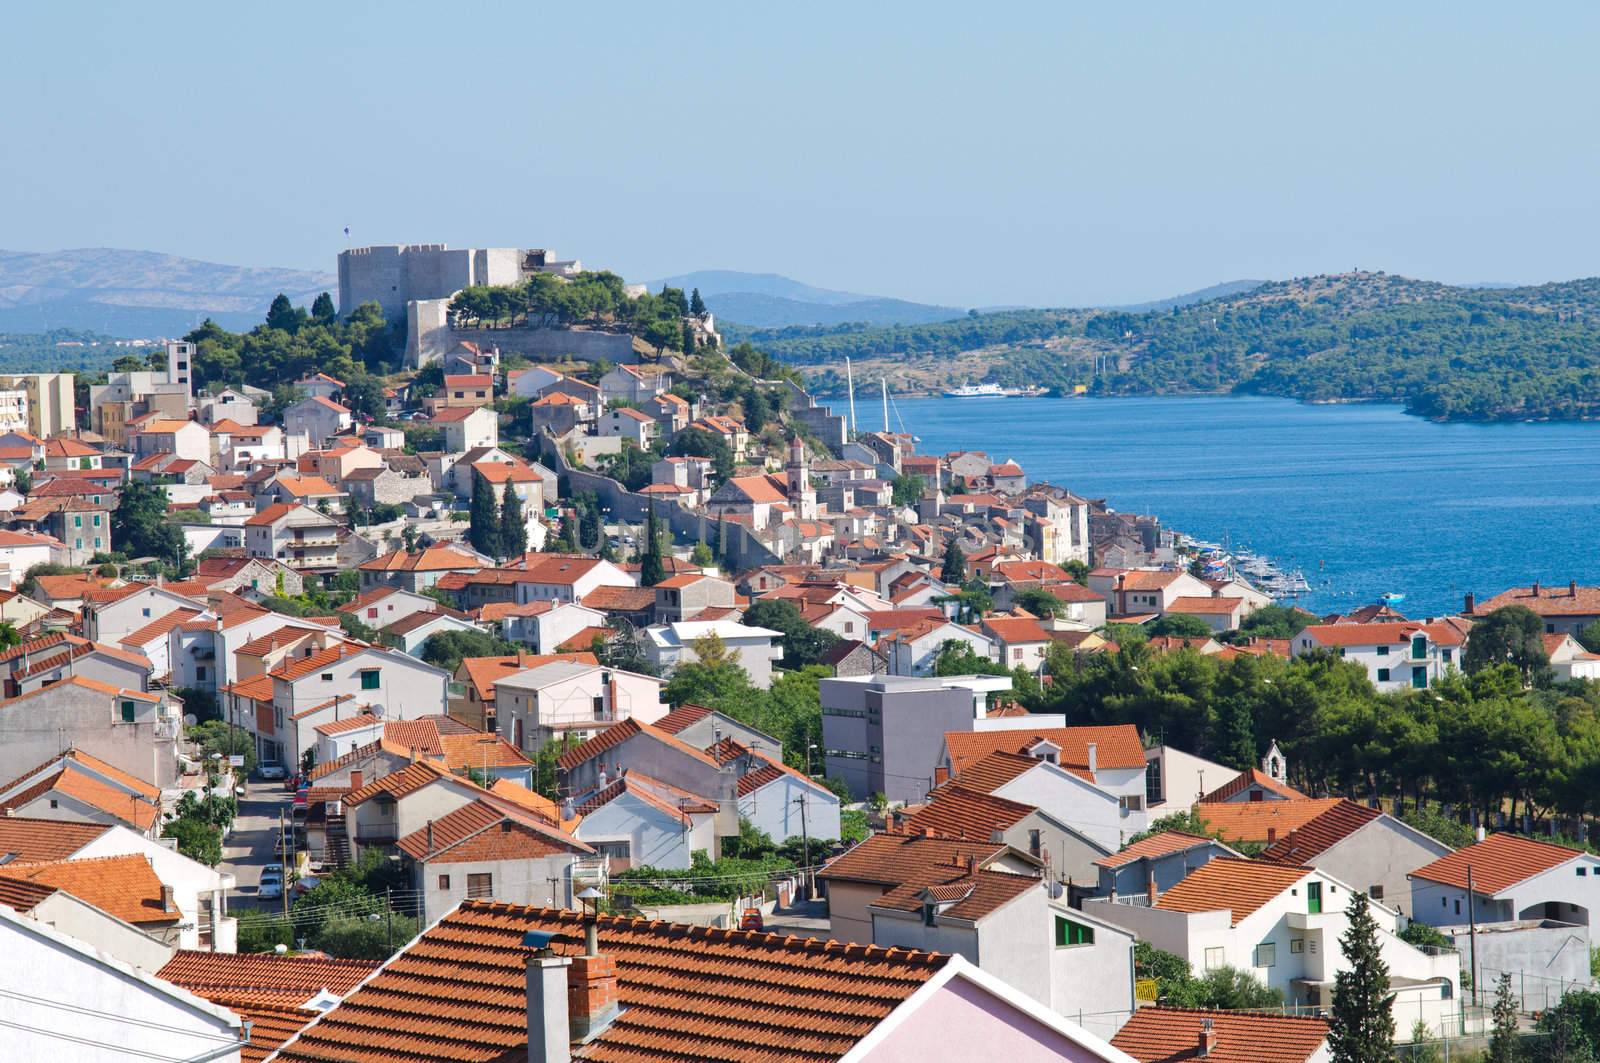 Dalmatian coast from the city of Sibenik Croatia